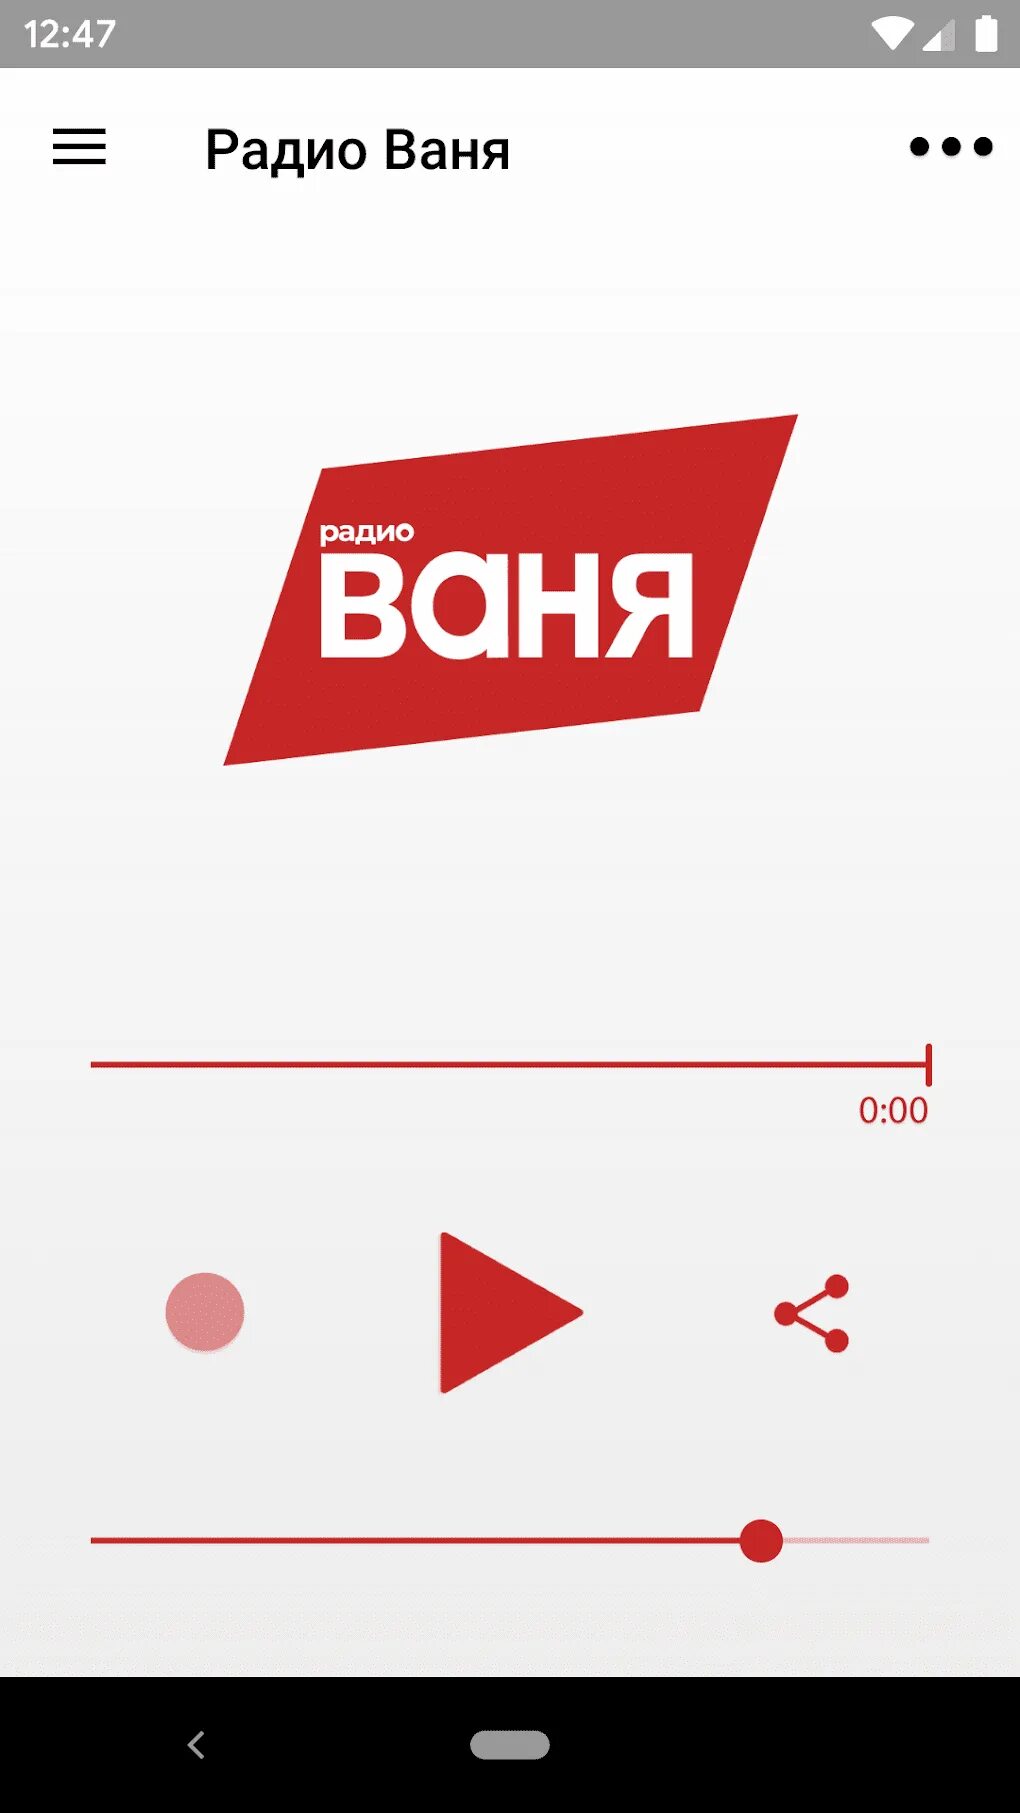 Плейлист радио ваня сегодня. Радио Ваня. Радио Ваня логотип. Плейлист радио Ваня. Радио Ваня Иваново.